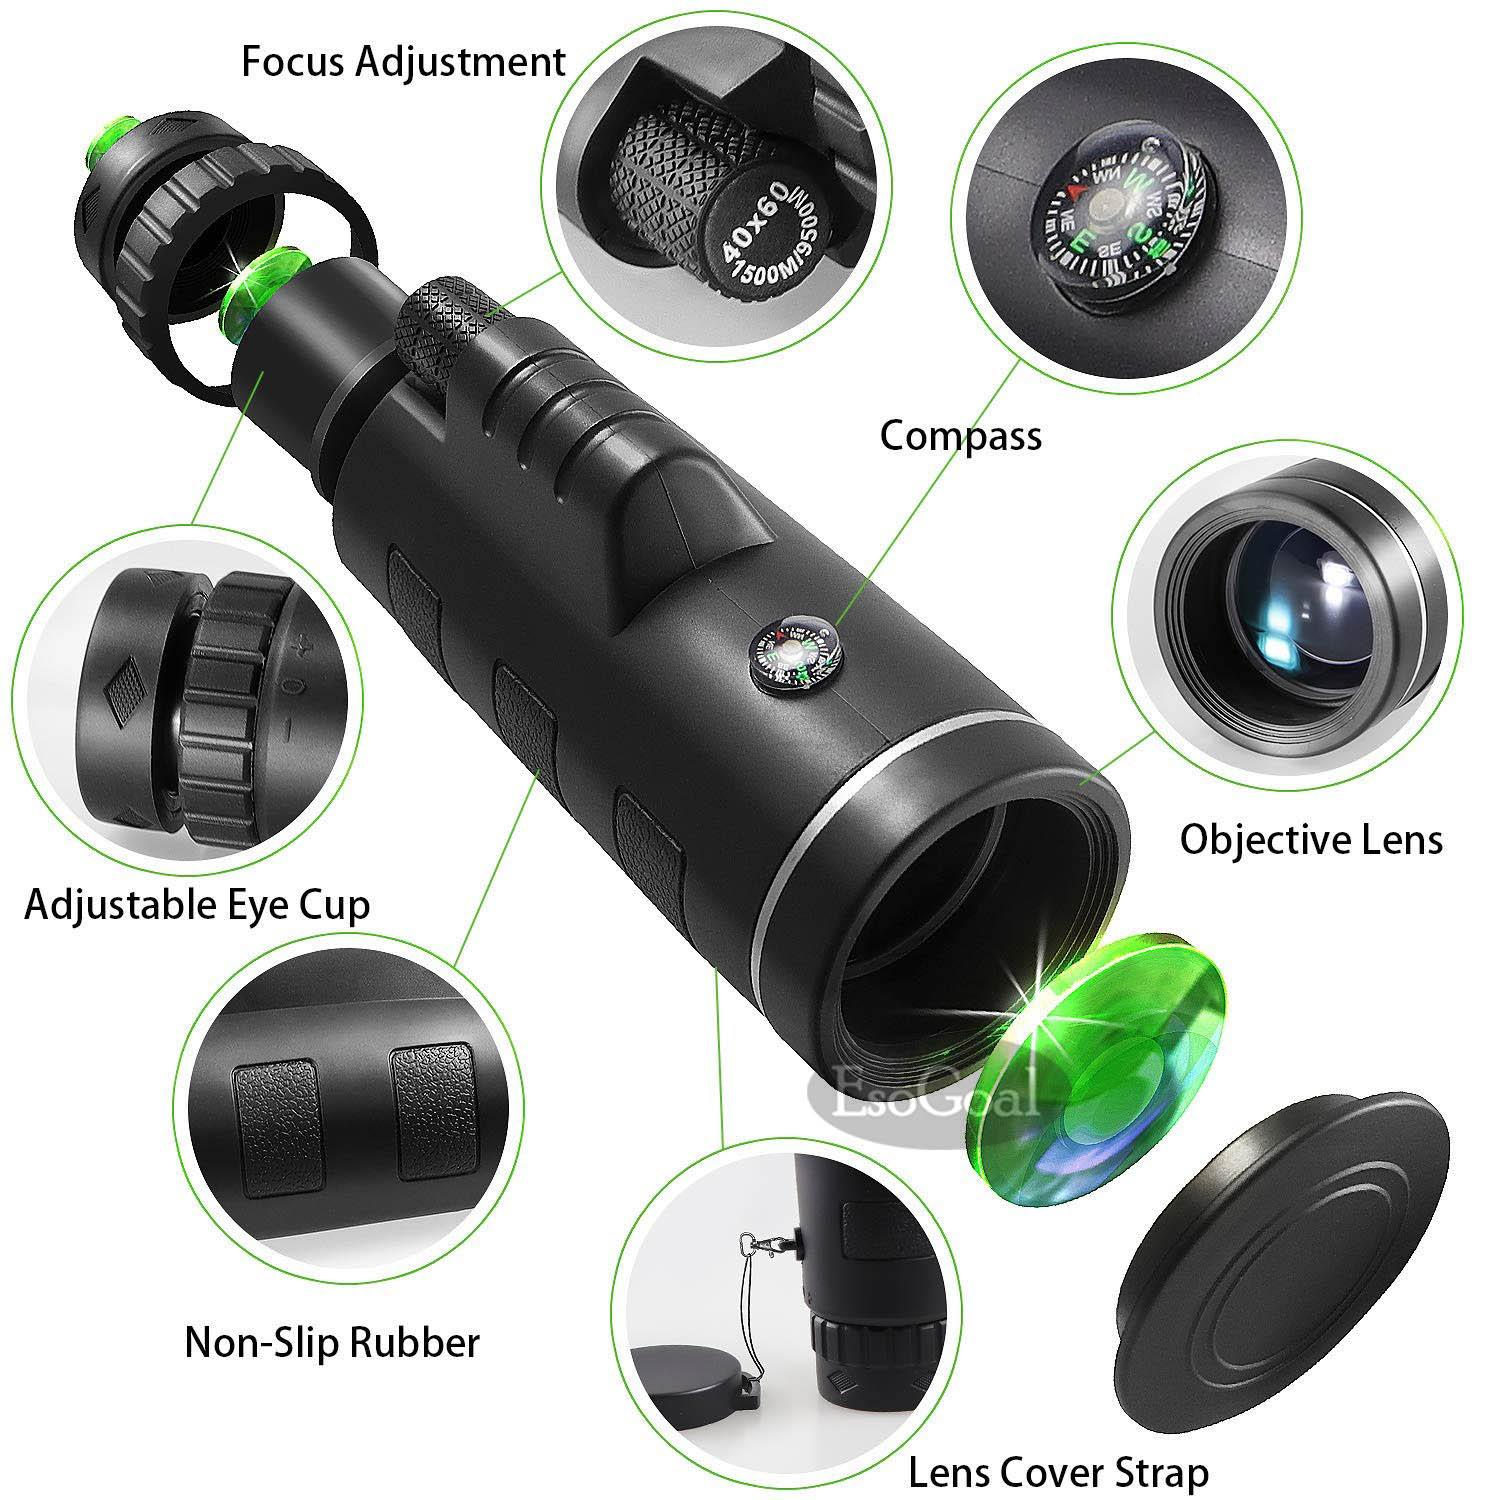 40X60 กล้องโทรทรรศน์ HD Mini Monocular สำหรับ Camping กลางแจ้งกล้องมองกลางคืนกลางแจ้งที่มีแสงน้อย Low-light night vision outdoor high-definition telescope(เข็มทิศ + คลิปกล้องโทรศัพท์มือถือ + ขาตั้งกล้องอลูมิเนียม)